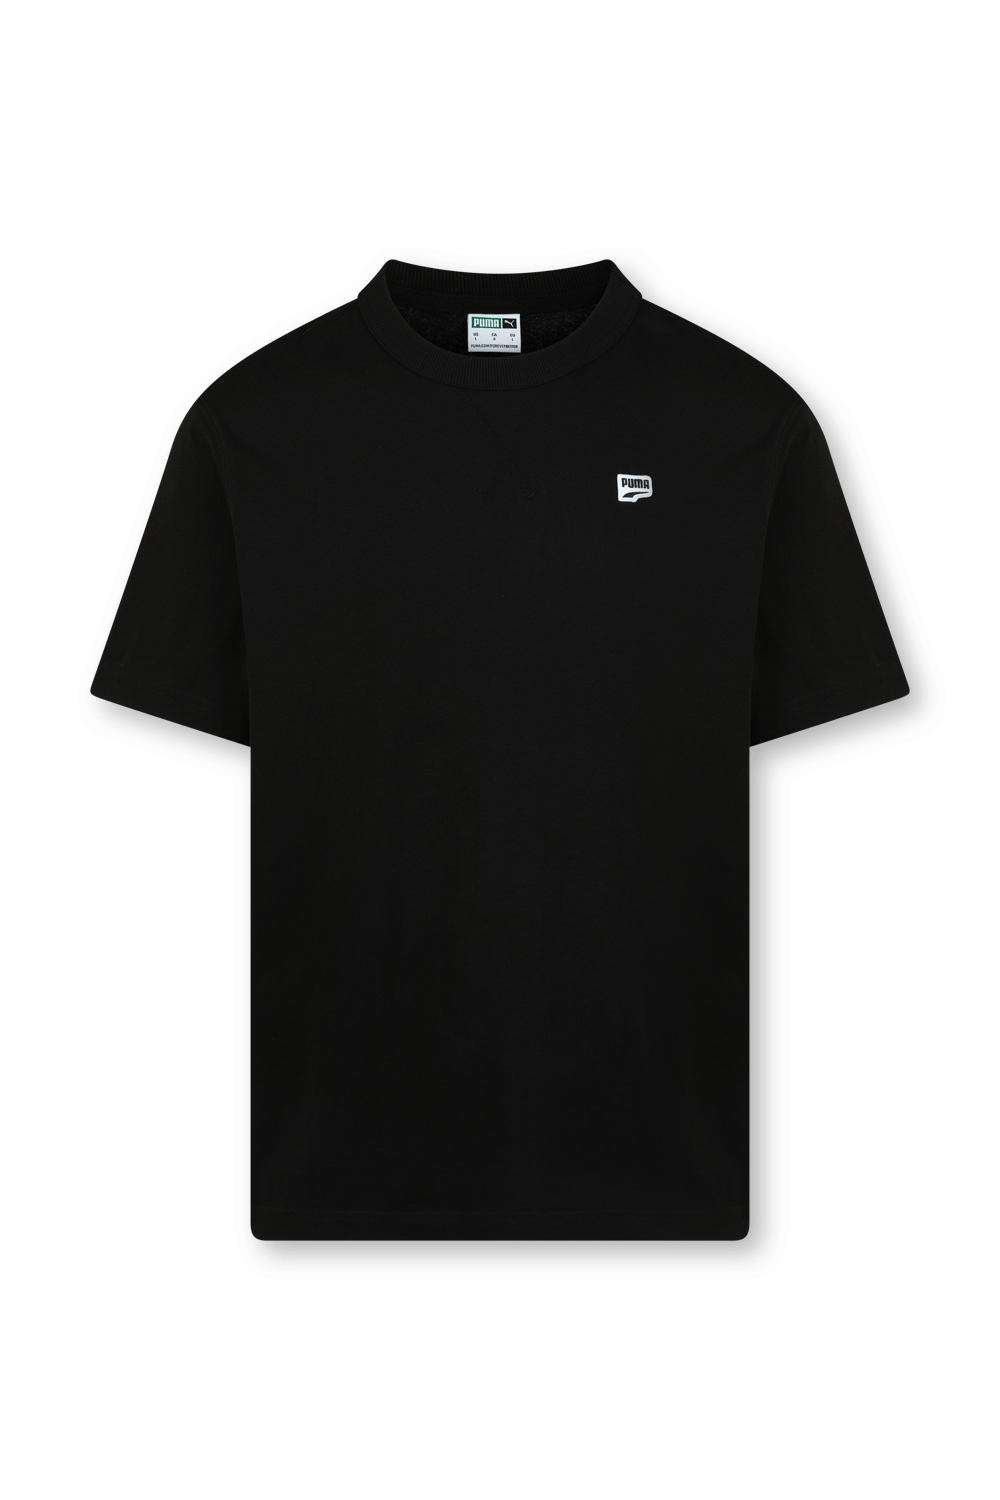 חולצת טי שחורה עם לוגו PUMA